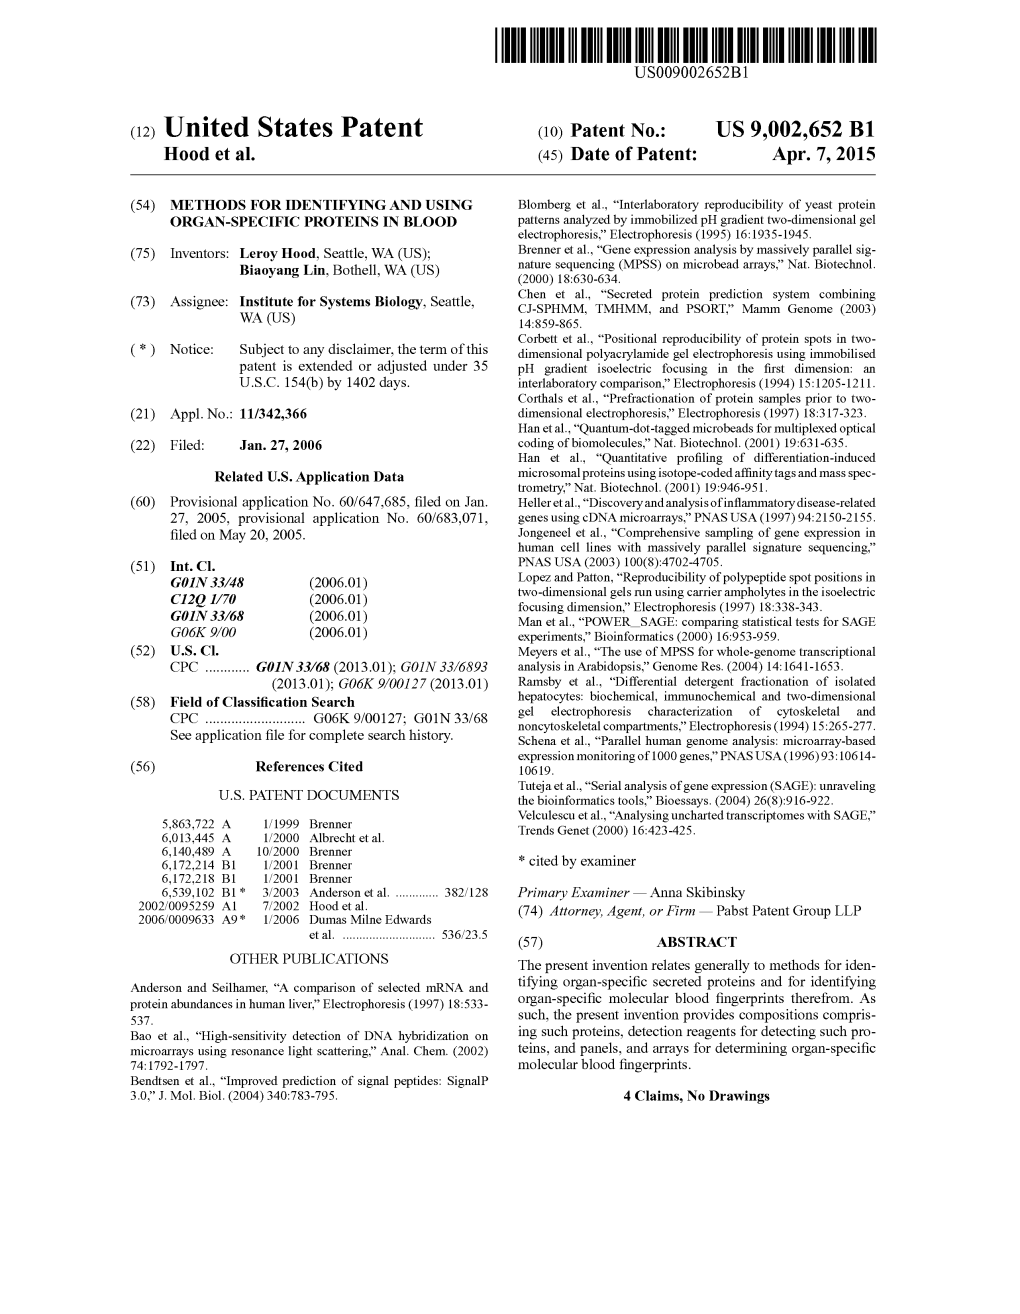 (12) United States Patent (10) Patent No.: US 9,002,652 B1 H00d Et Al